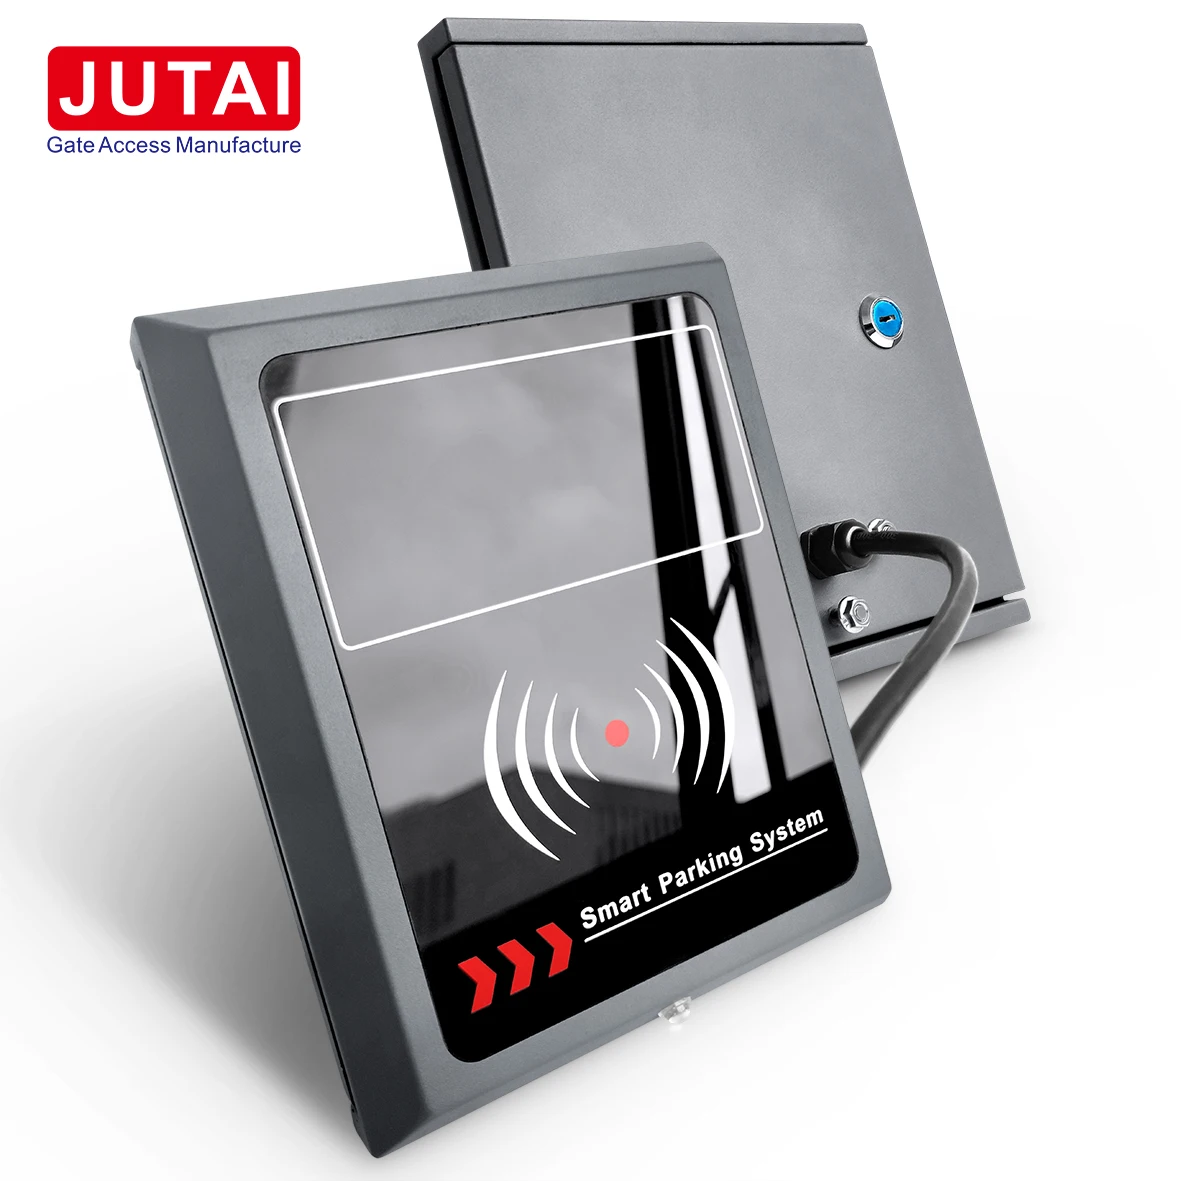 JUTAI UHF-RFID-Aktivleser mit großer Reichweite enthalten aktive Tags